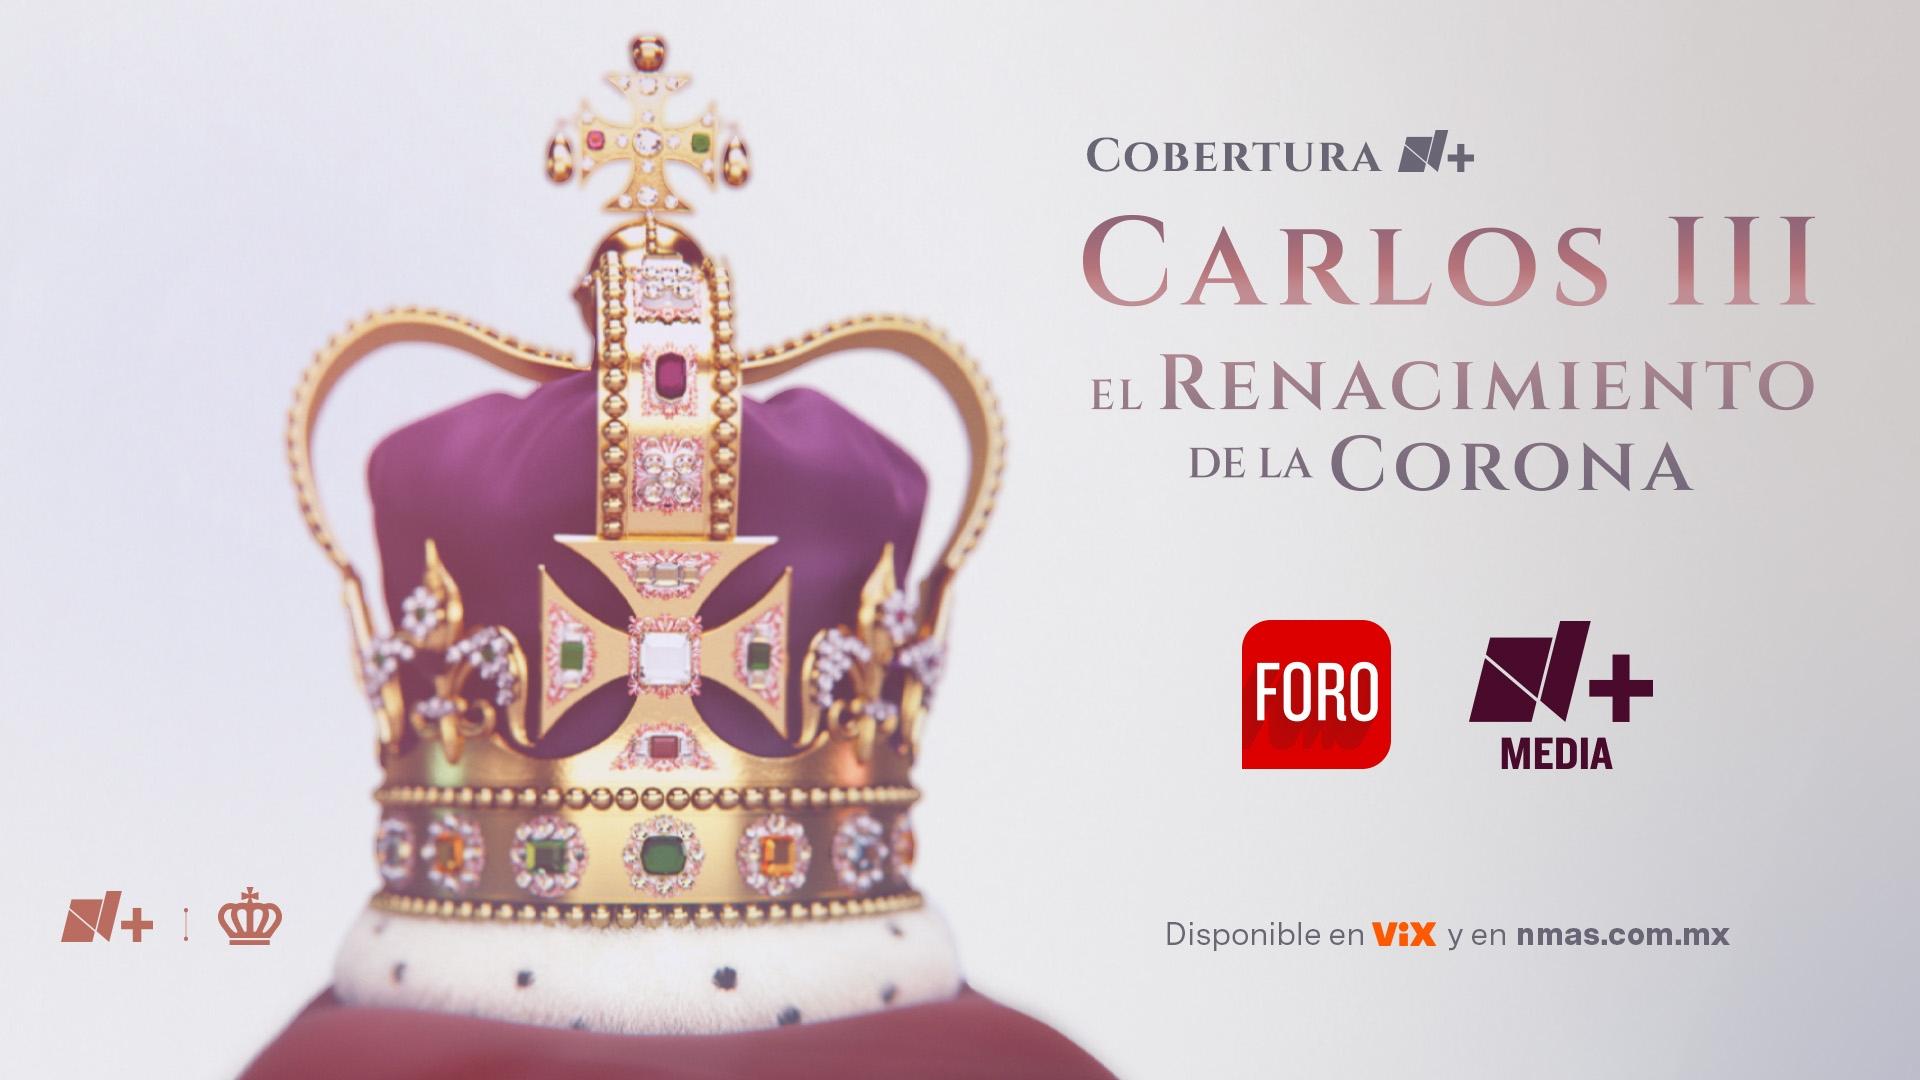 N+ Ofrecerá Cobertura Multiplataforma De La Coronación De Carlos III